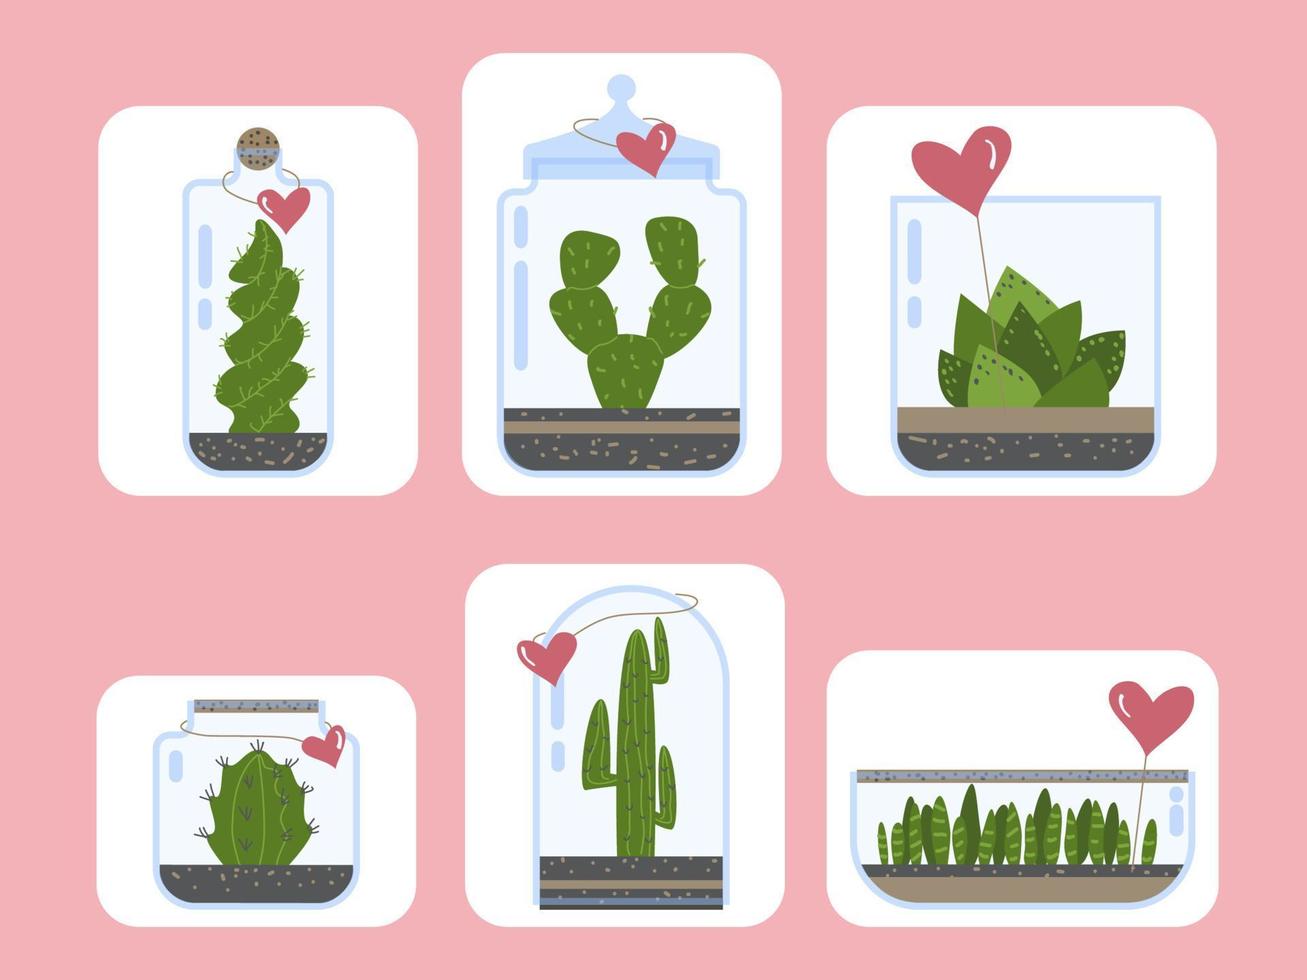 piante da terrario impostate. cactus succulente florarium in vaso di vetro con carta del cuore, graziosi terrari con piante esotiche, cactus in bottiglia per piante verdi attuali illustrazione vettoriale